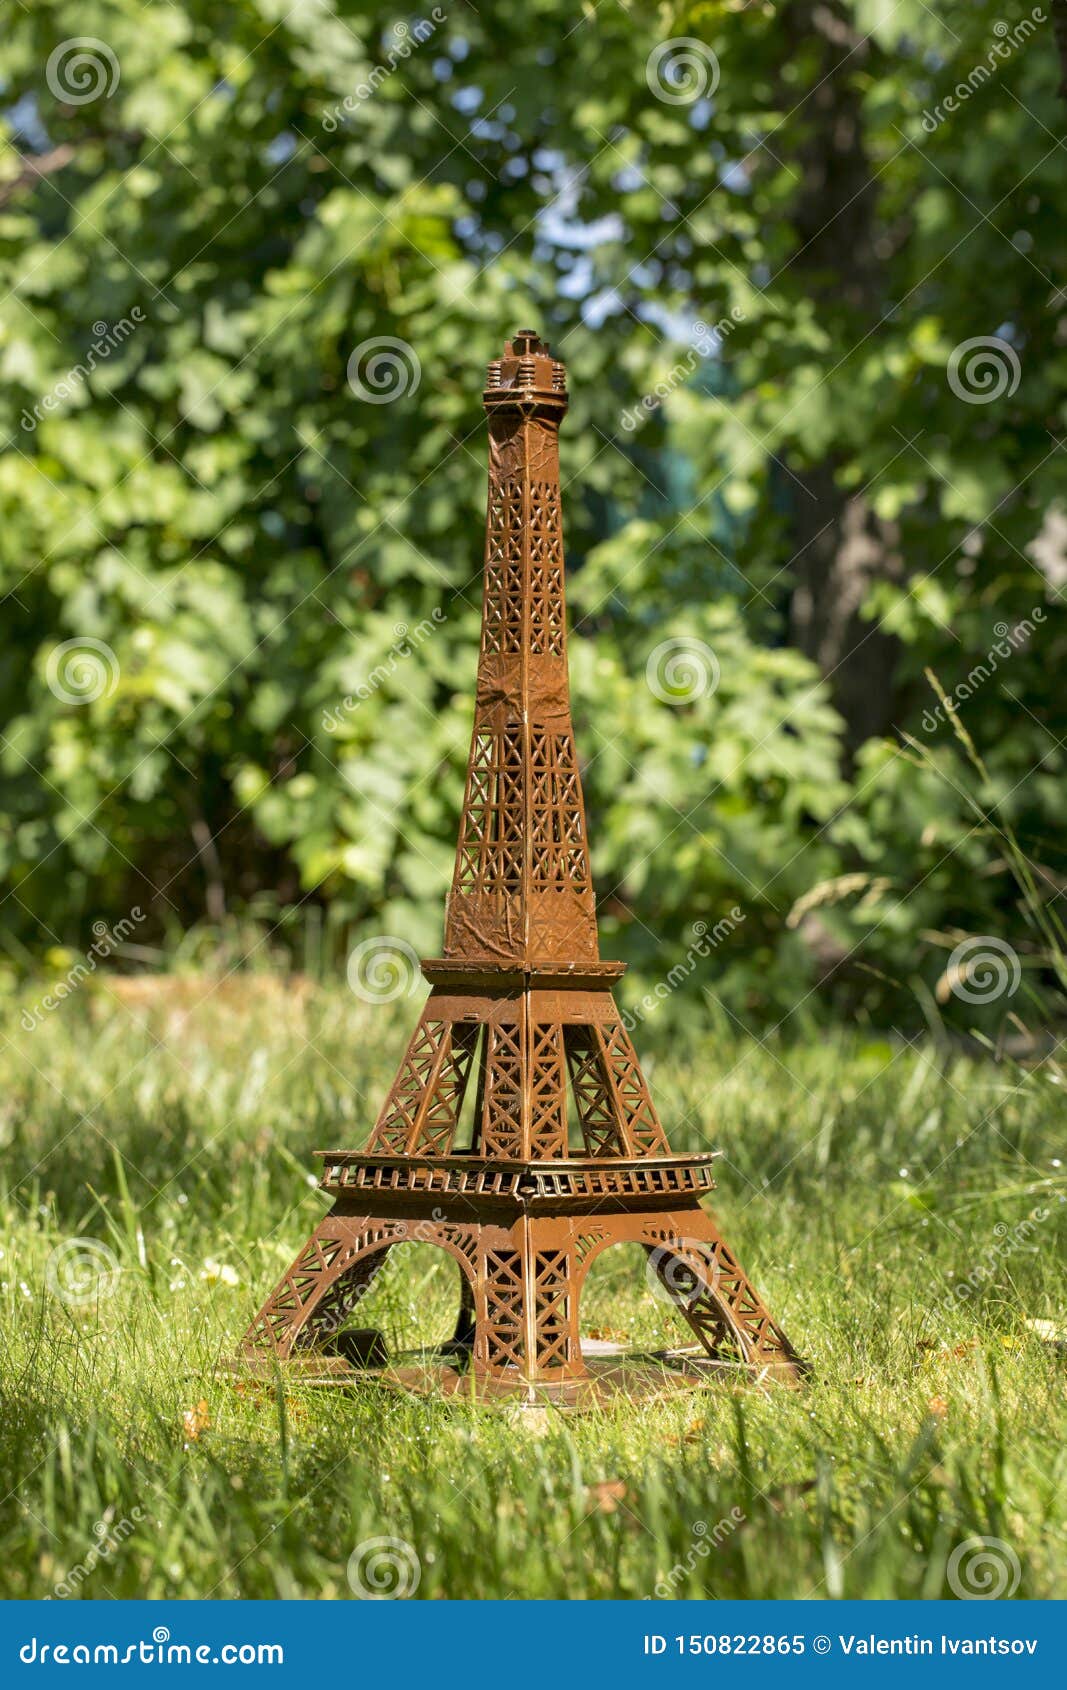 El Modelo La Torre Eiffel Hizo De La Cartulina En Hierba Verde Imagen de archivo - Imagen de torre, eiffel: